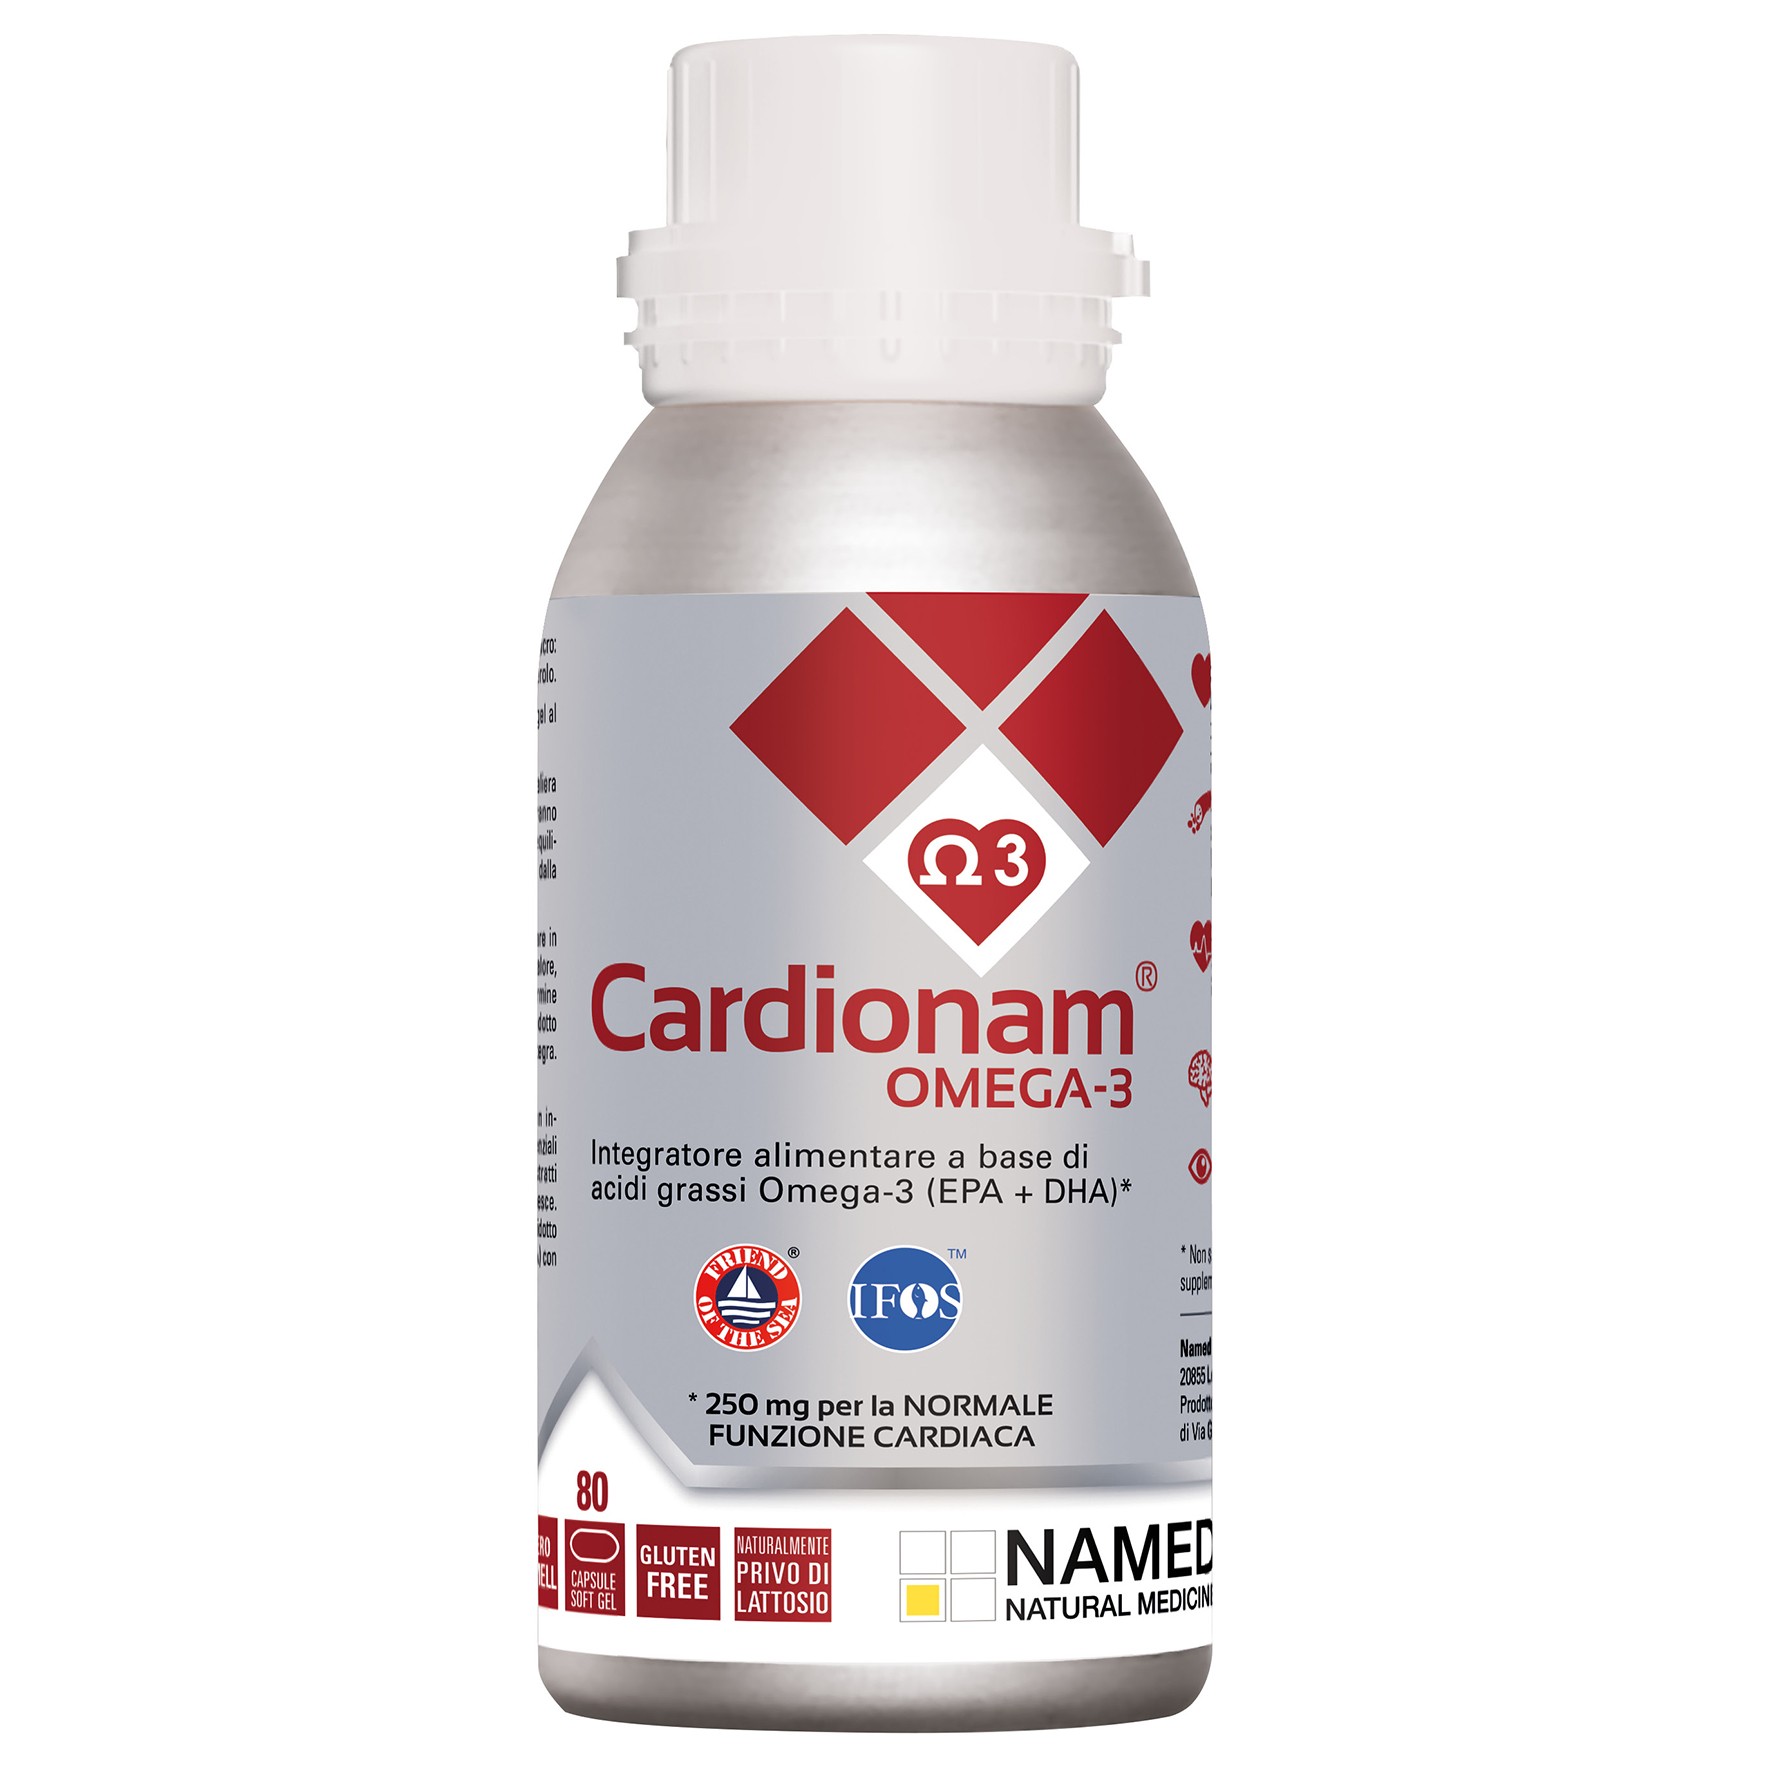 Cardionam Omega-3 mehke kapsule, 80 kapsul